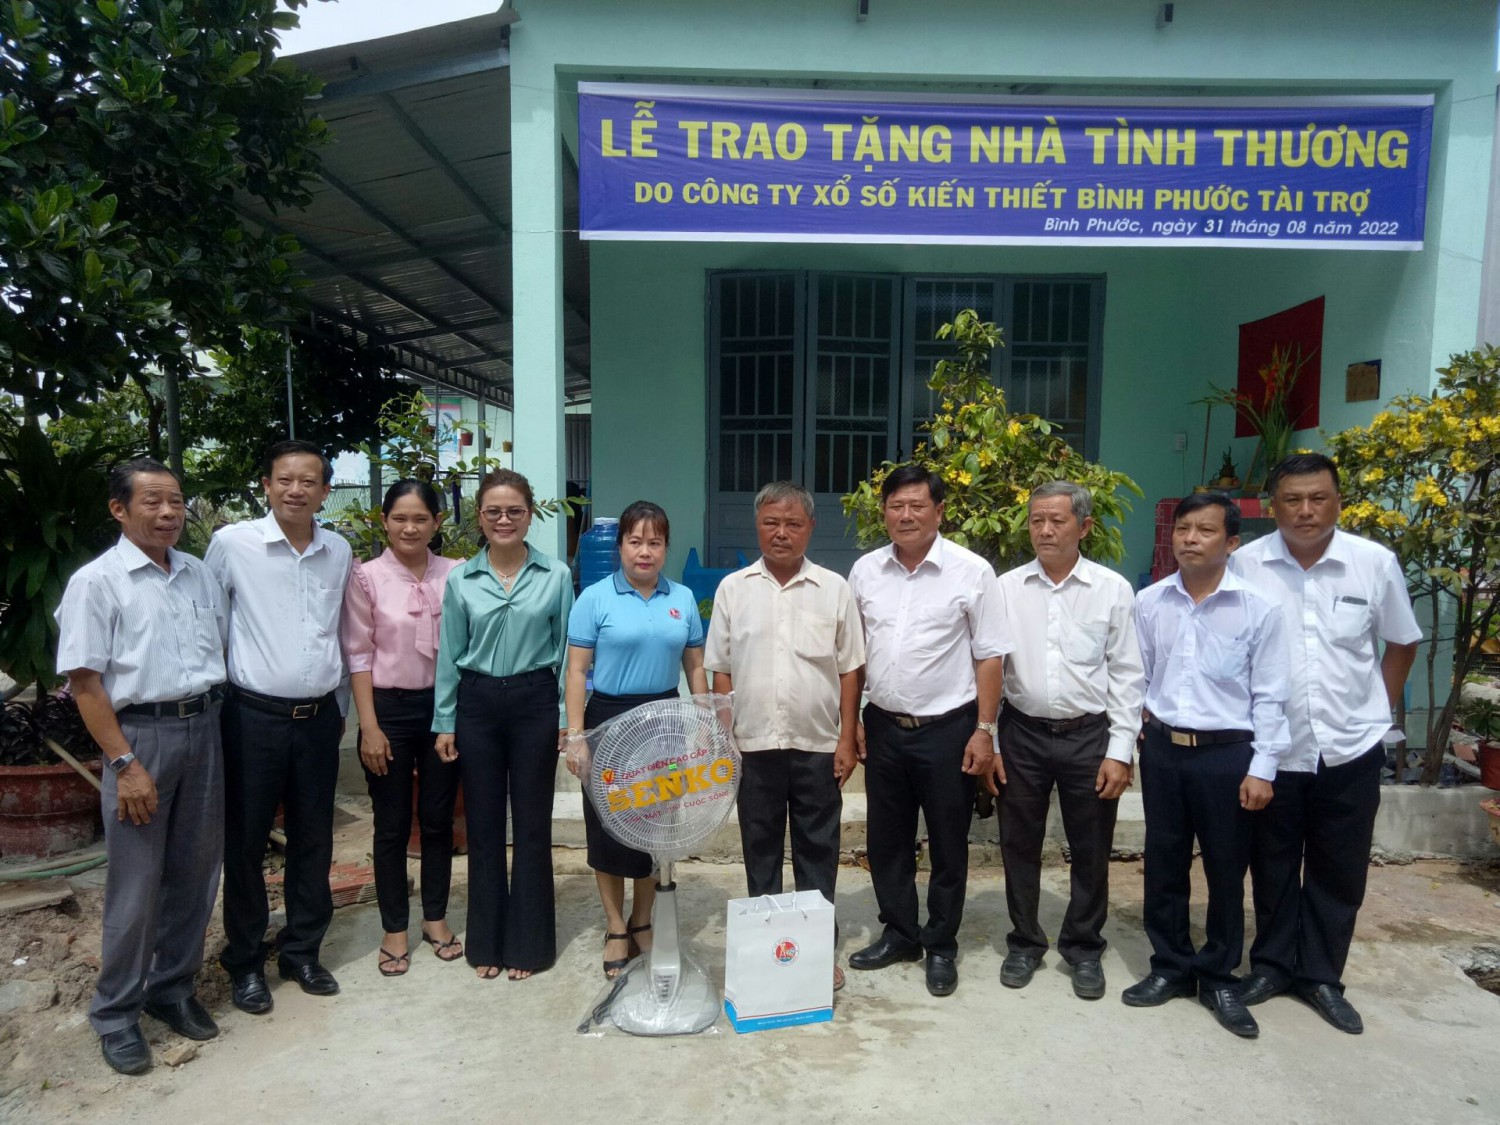 Ông Trần Anh Minh - Chủ tịch UBND thị xã Trảng Bàng (bên trái) trao thư cám ơn cho đơn vị tài trợ